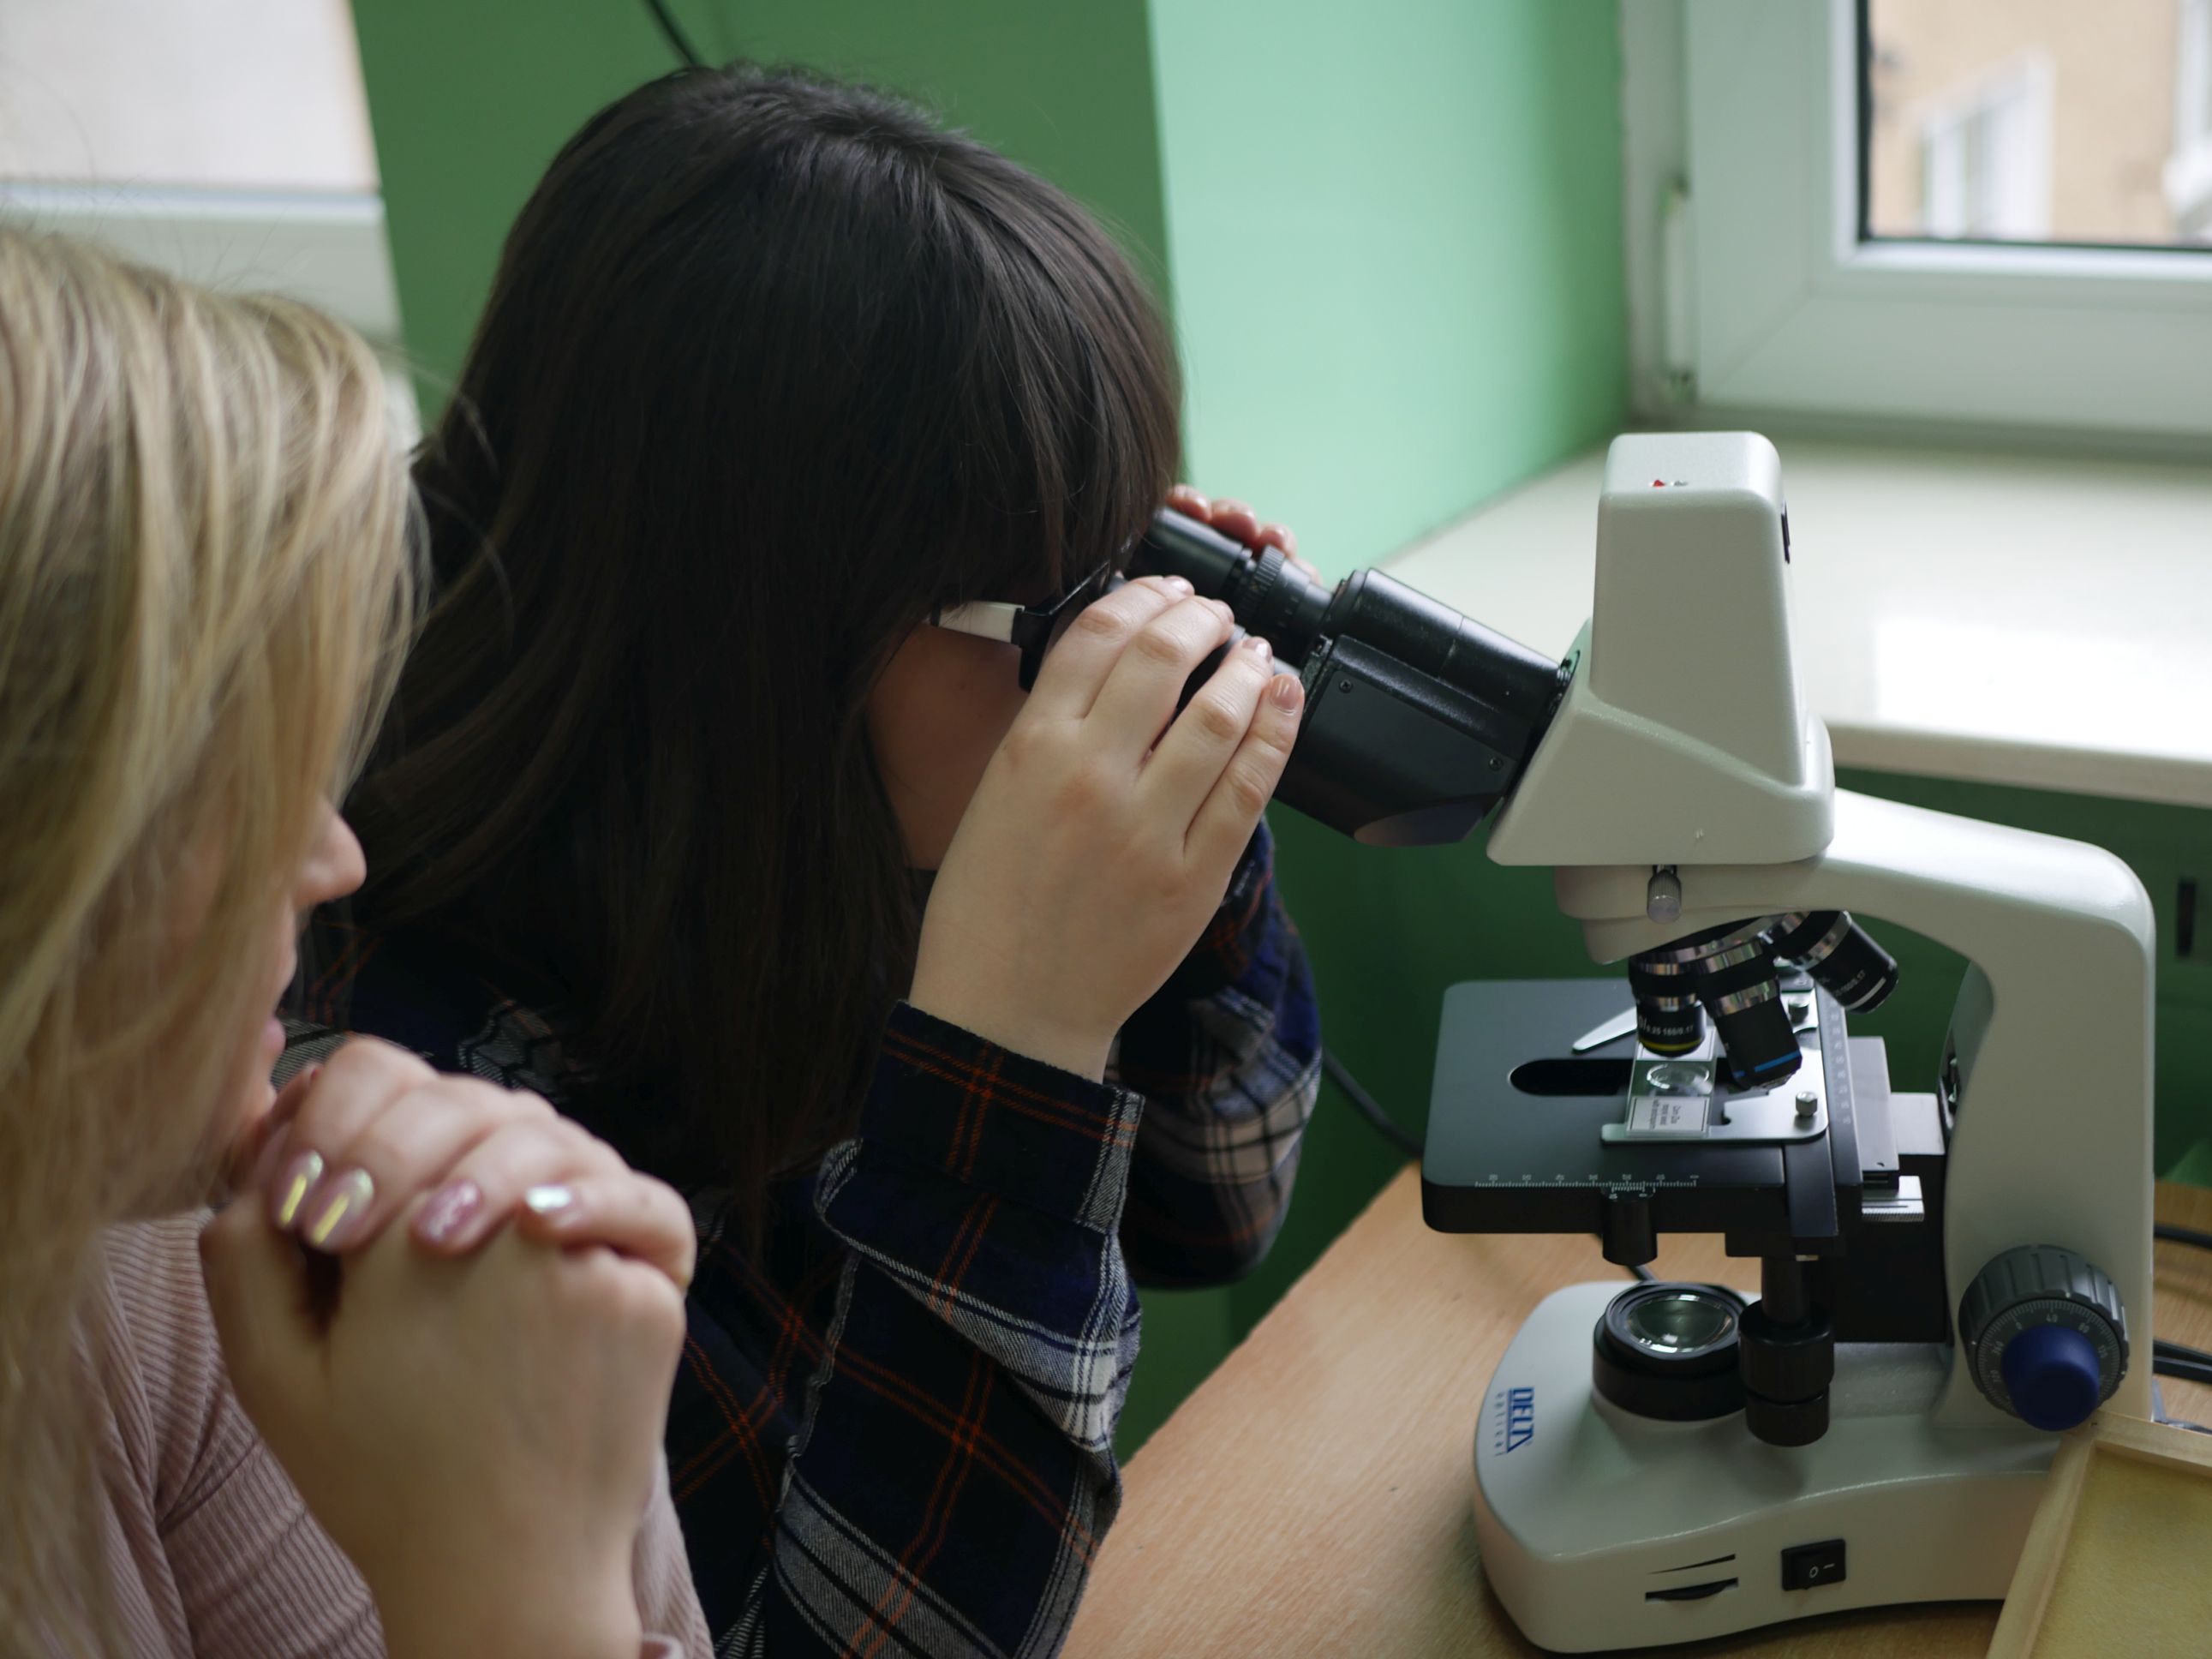 2 dziewczyny siedzące obok siebie, jedna patrzy się przez mikroskop.